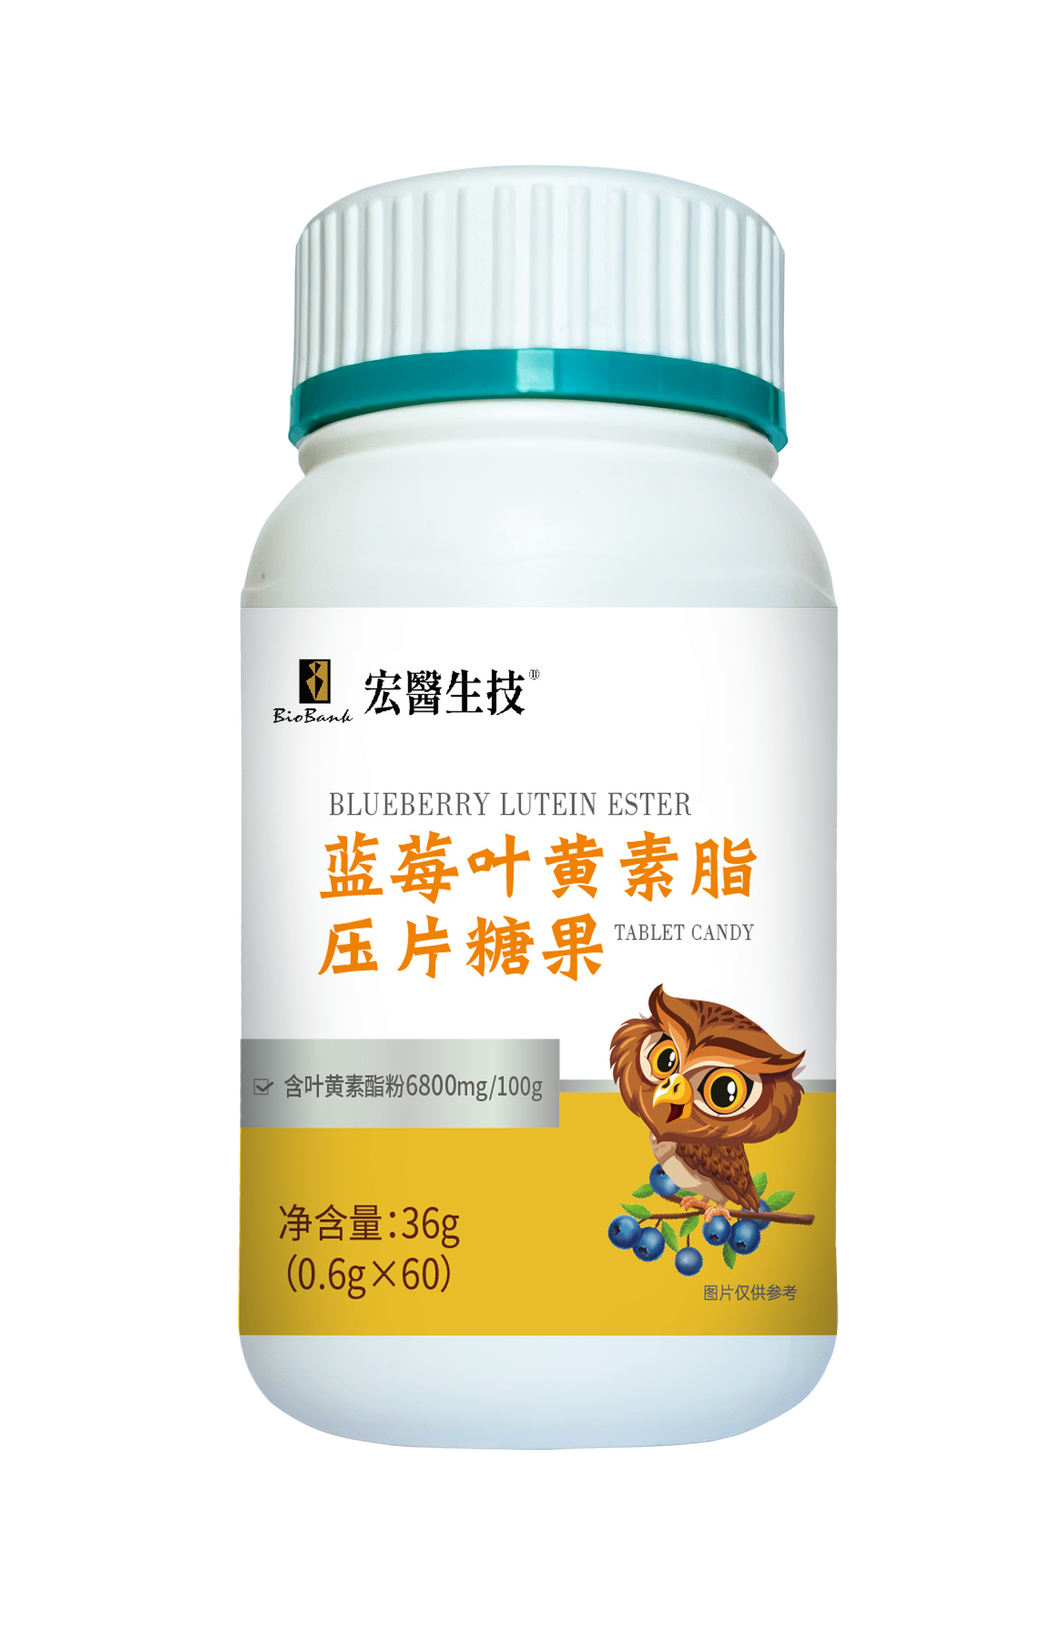 藍莓葉黃素脂壓片糖果0.6gx60片/瓶【大金宏醫BioBank】中國限定販售